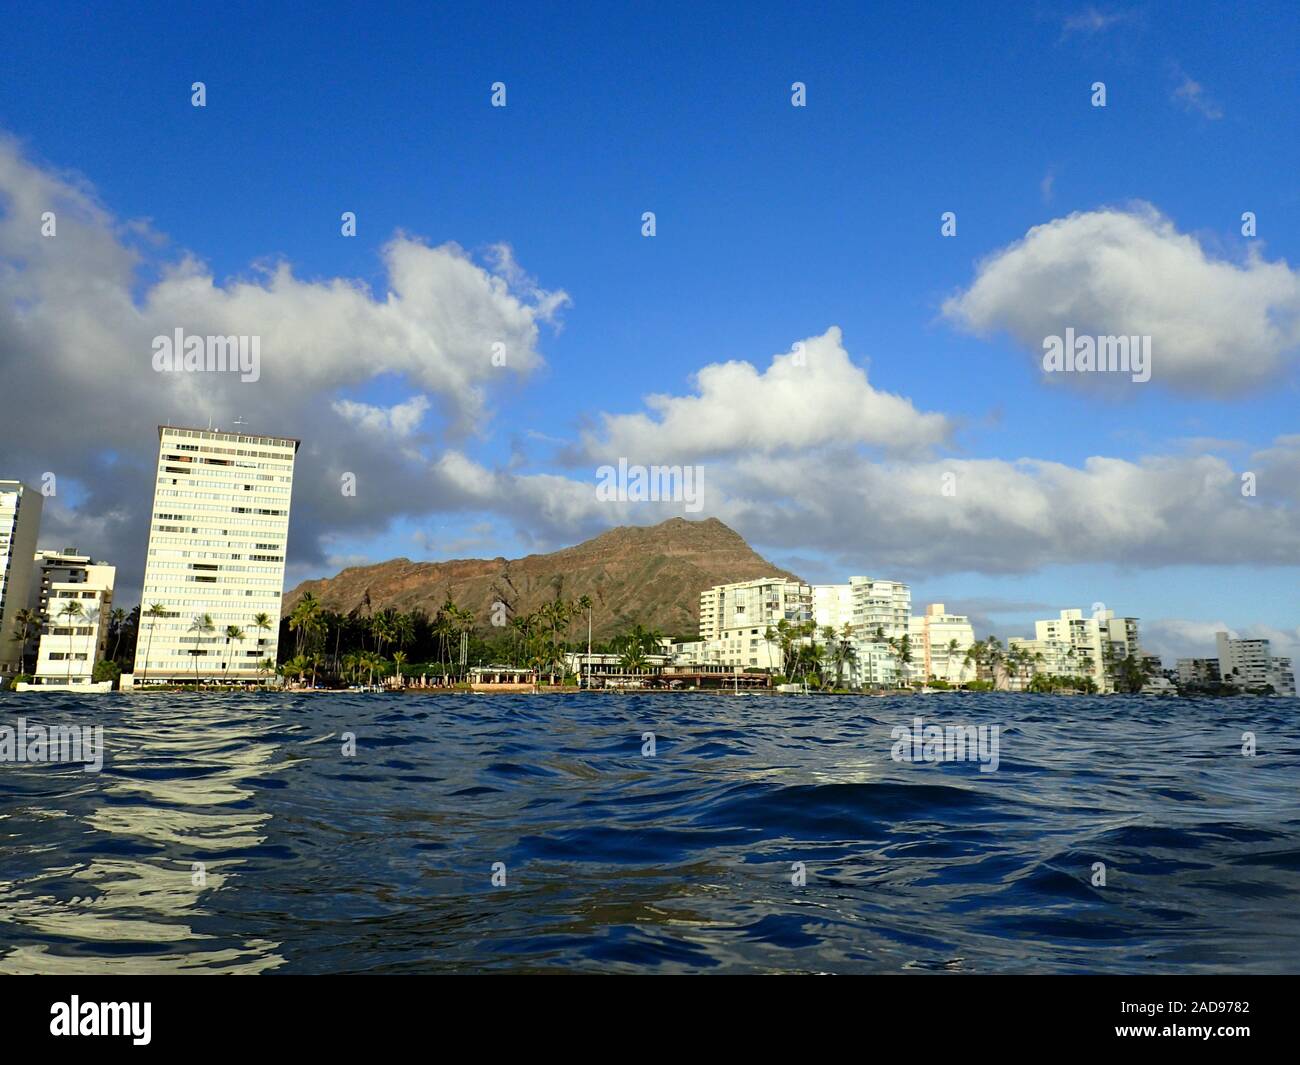 Hotel Outrigger Canoe Club, Kokospalmen, Condo Gebäude, Wolken und Diamond Head Krater in der Ferne auf Oahu, Hawaii gesehen von der Stockfoto